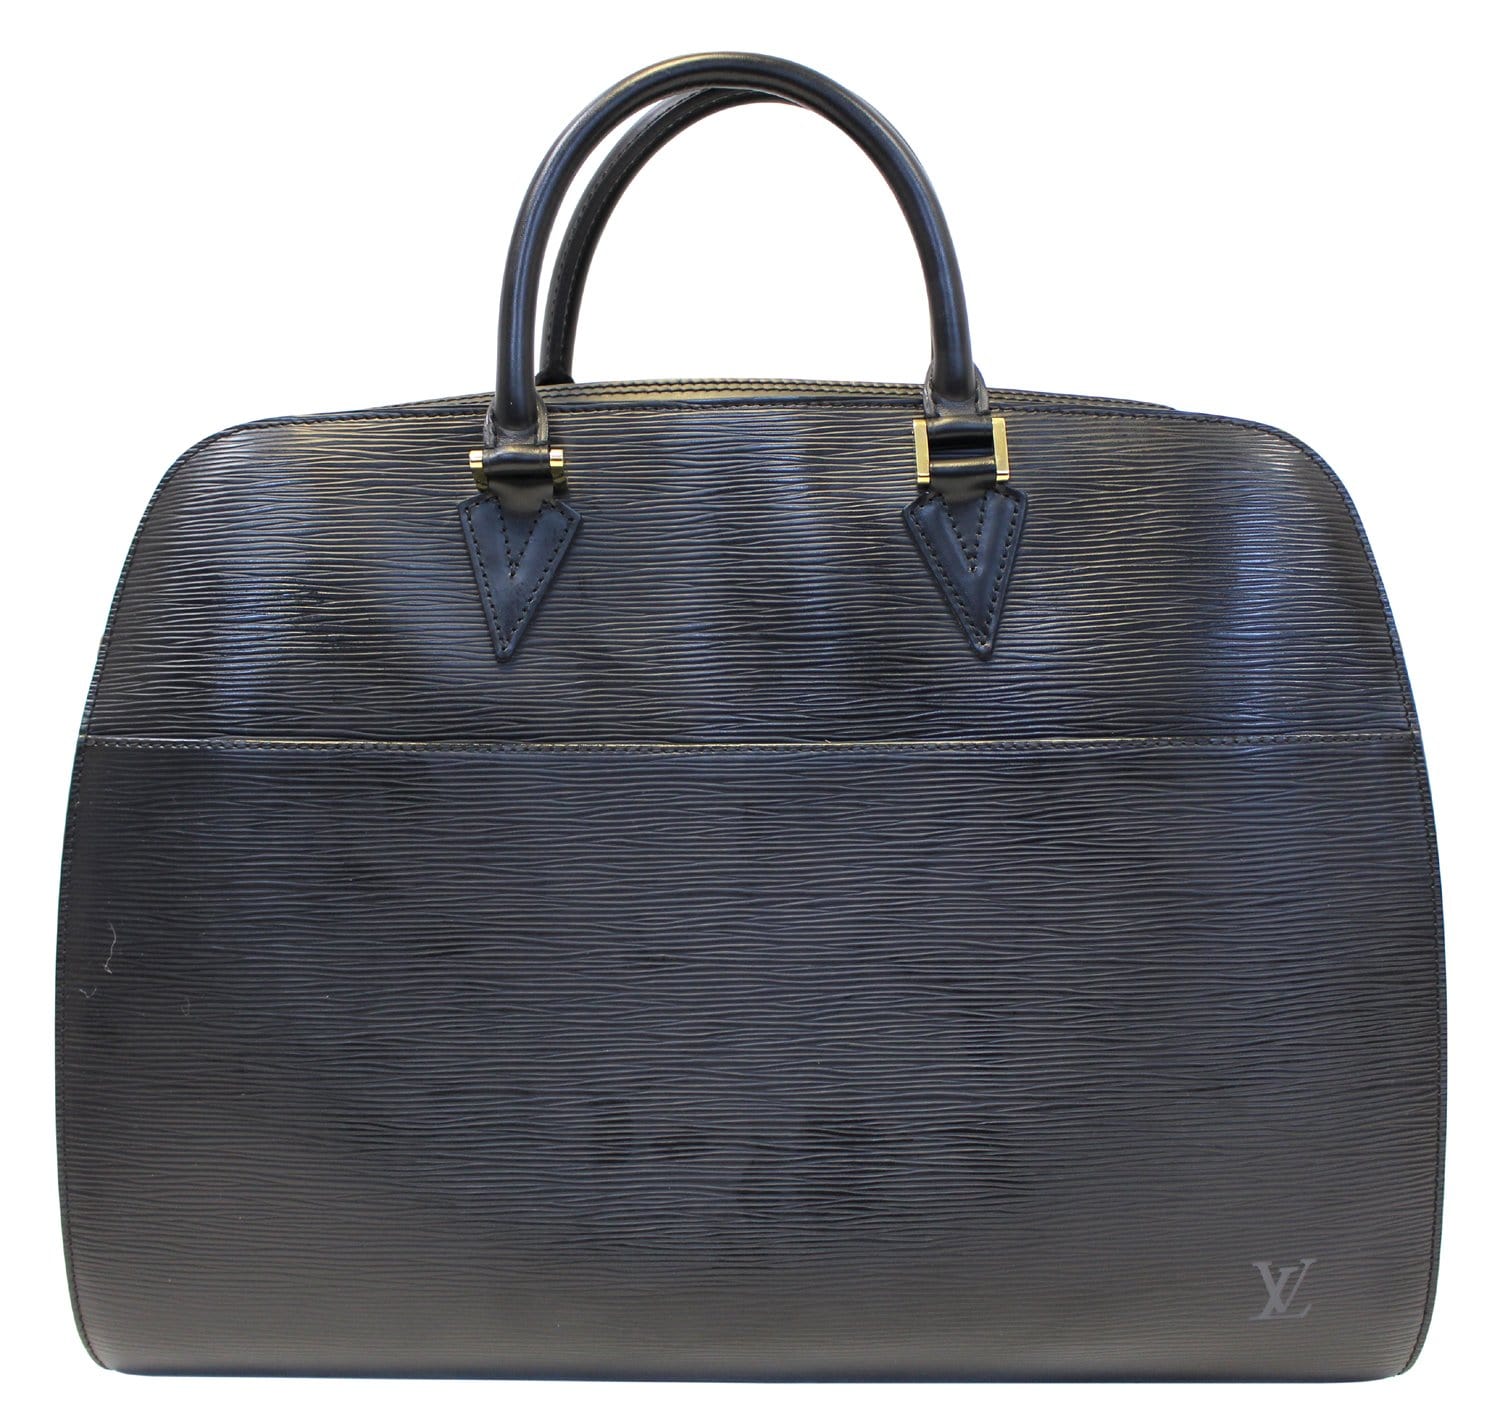 Fab Louis Quatorze Paris Logo-ed Satchel Briefcase Purse Luxery Desginer  Bag